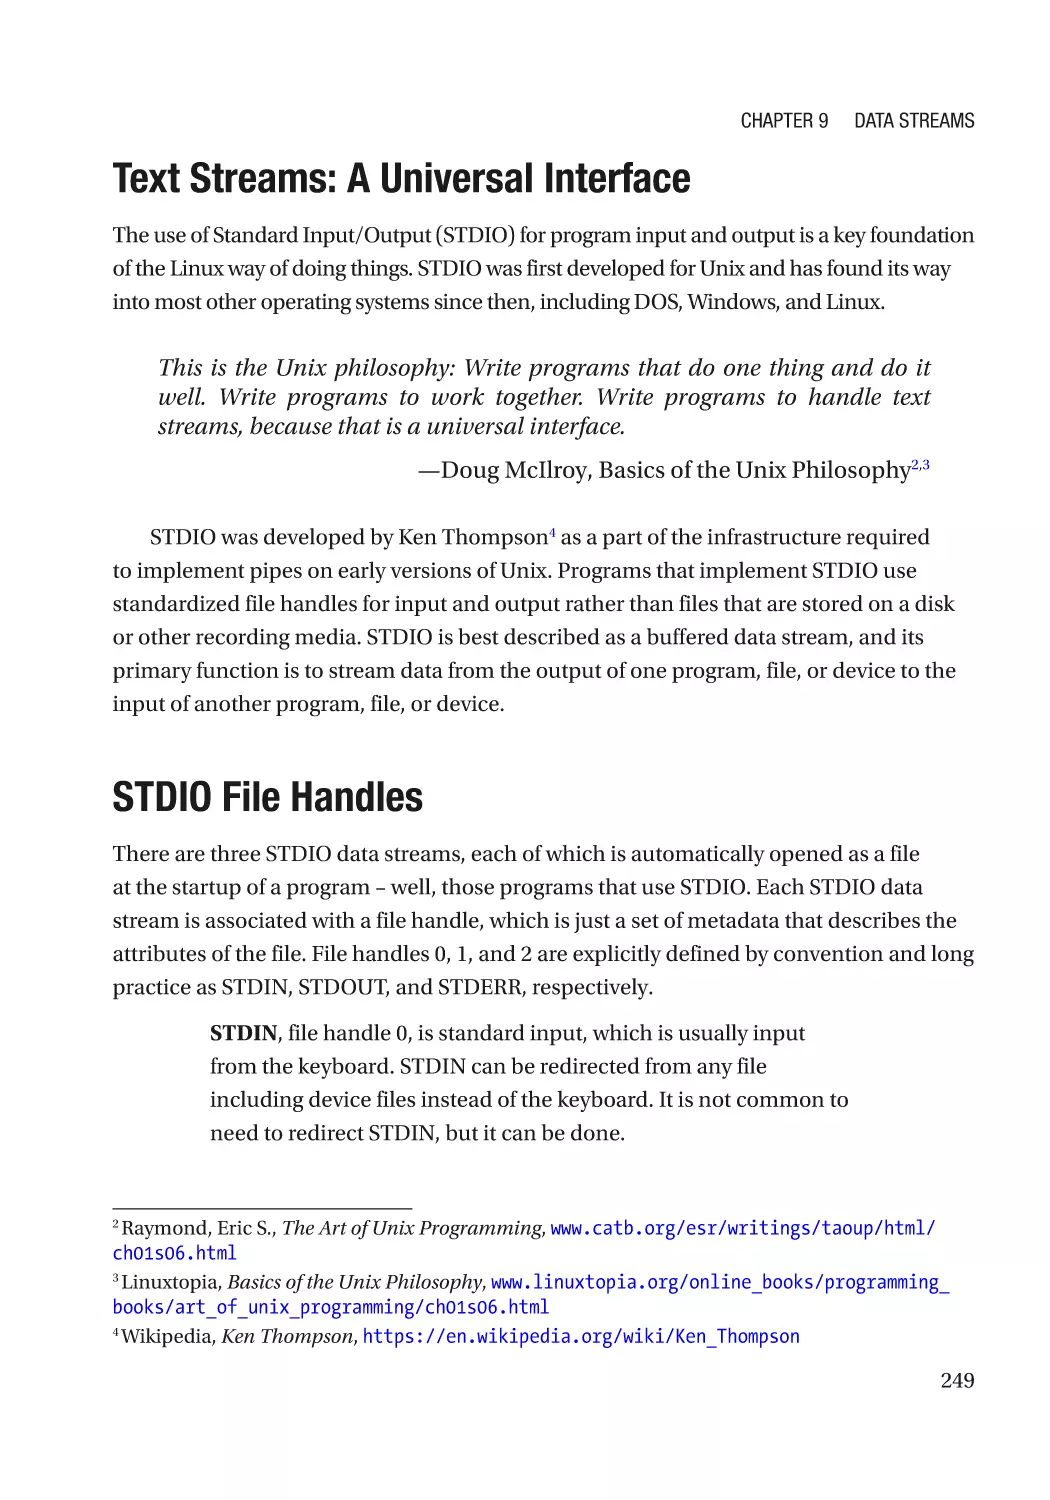 Text Streams
STDIO File Handles